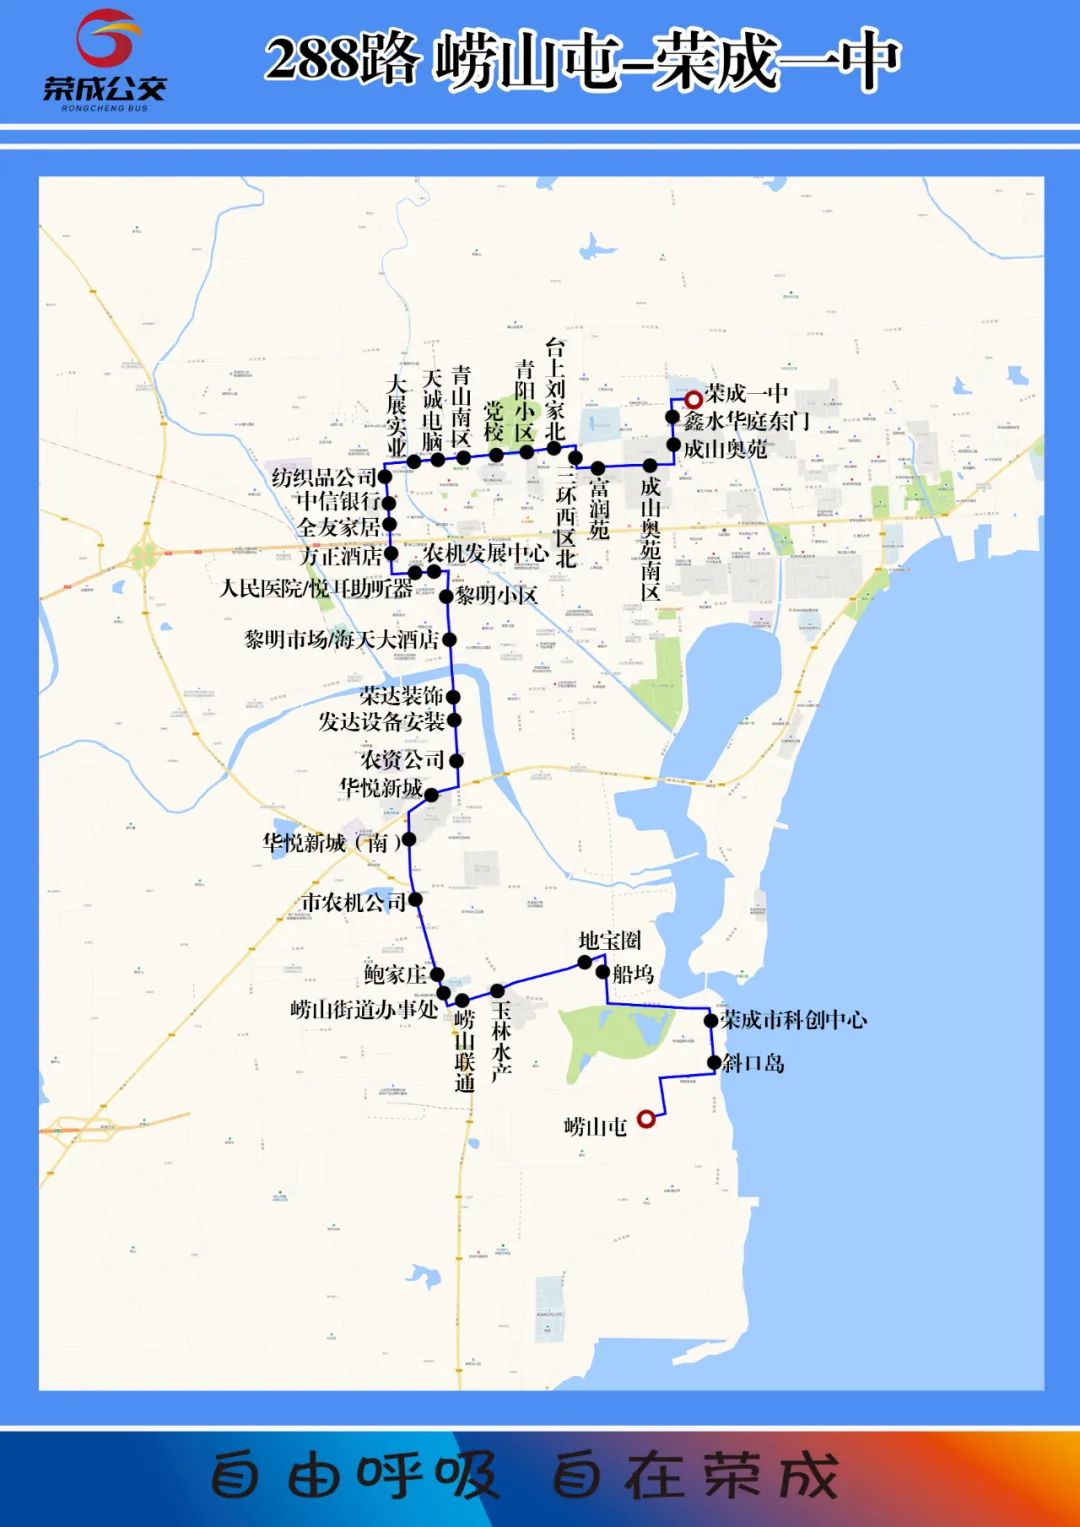 749路公交车路线图全线图片